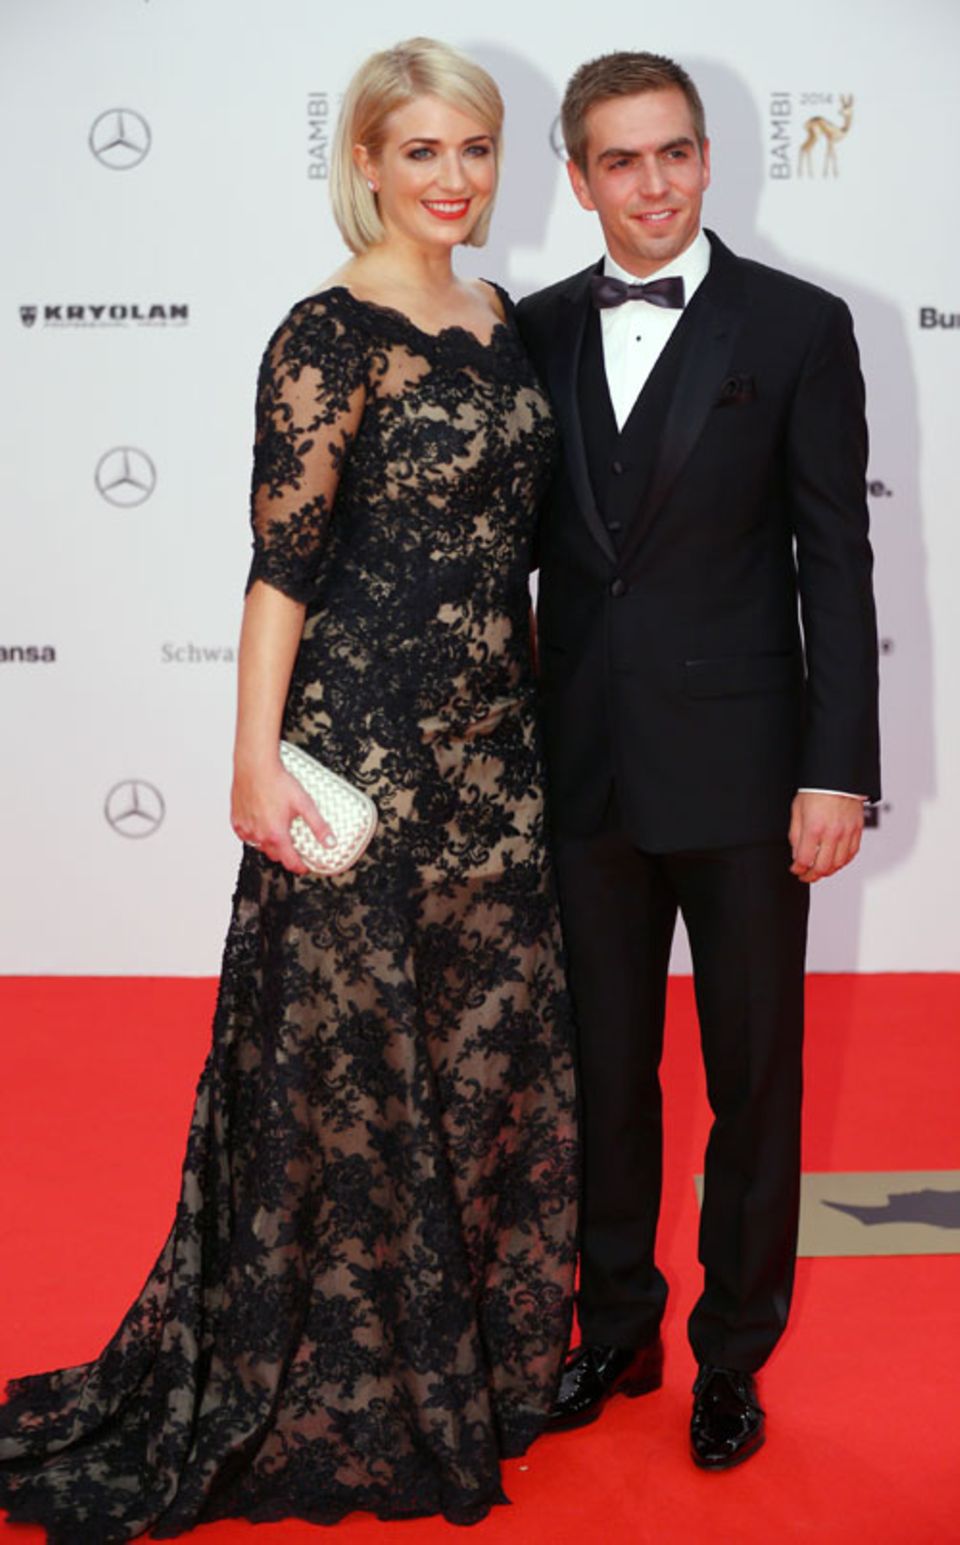 Fußball-Star Philipp Lahm kam in Begleitung seiner Ehefrau und wurde, zusammen mit seinem Teamkollegen Miroslav Klose, mit dem Ehrenpreis der Jury ausgezeichnet.